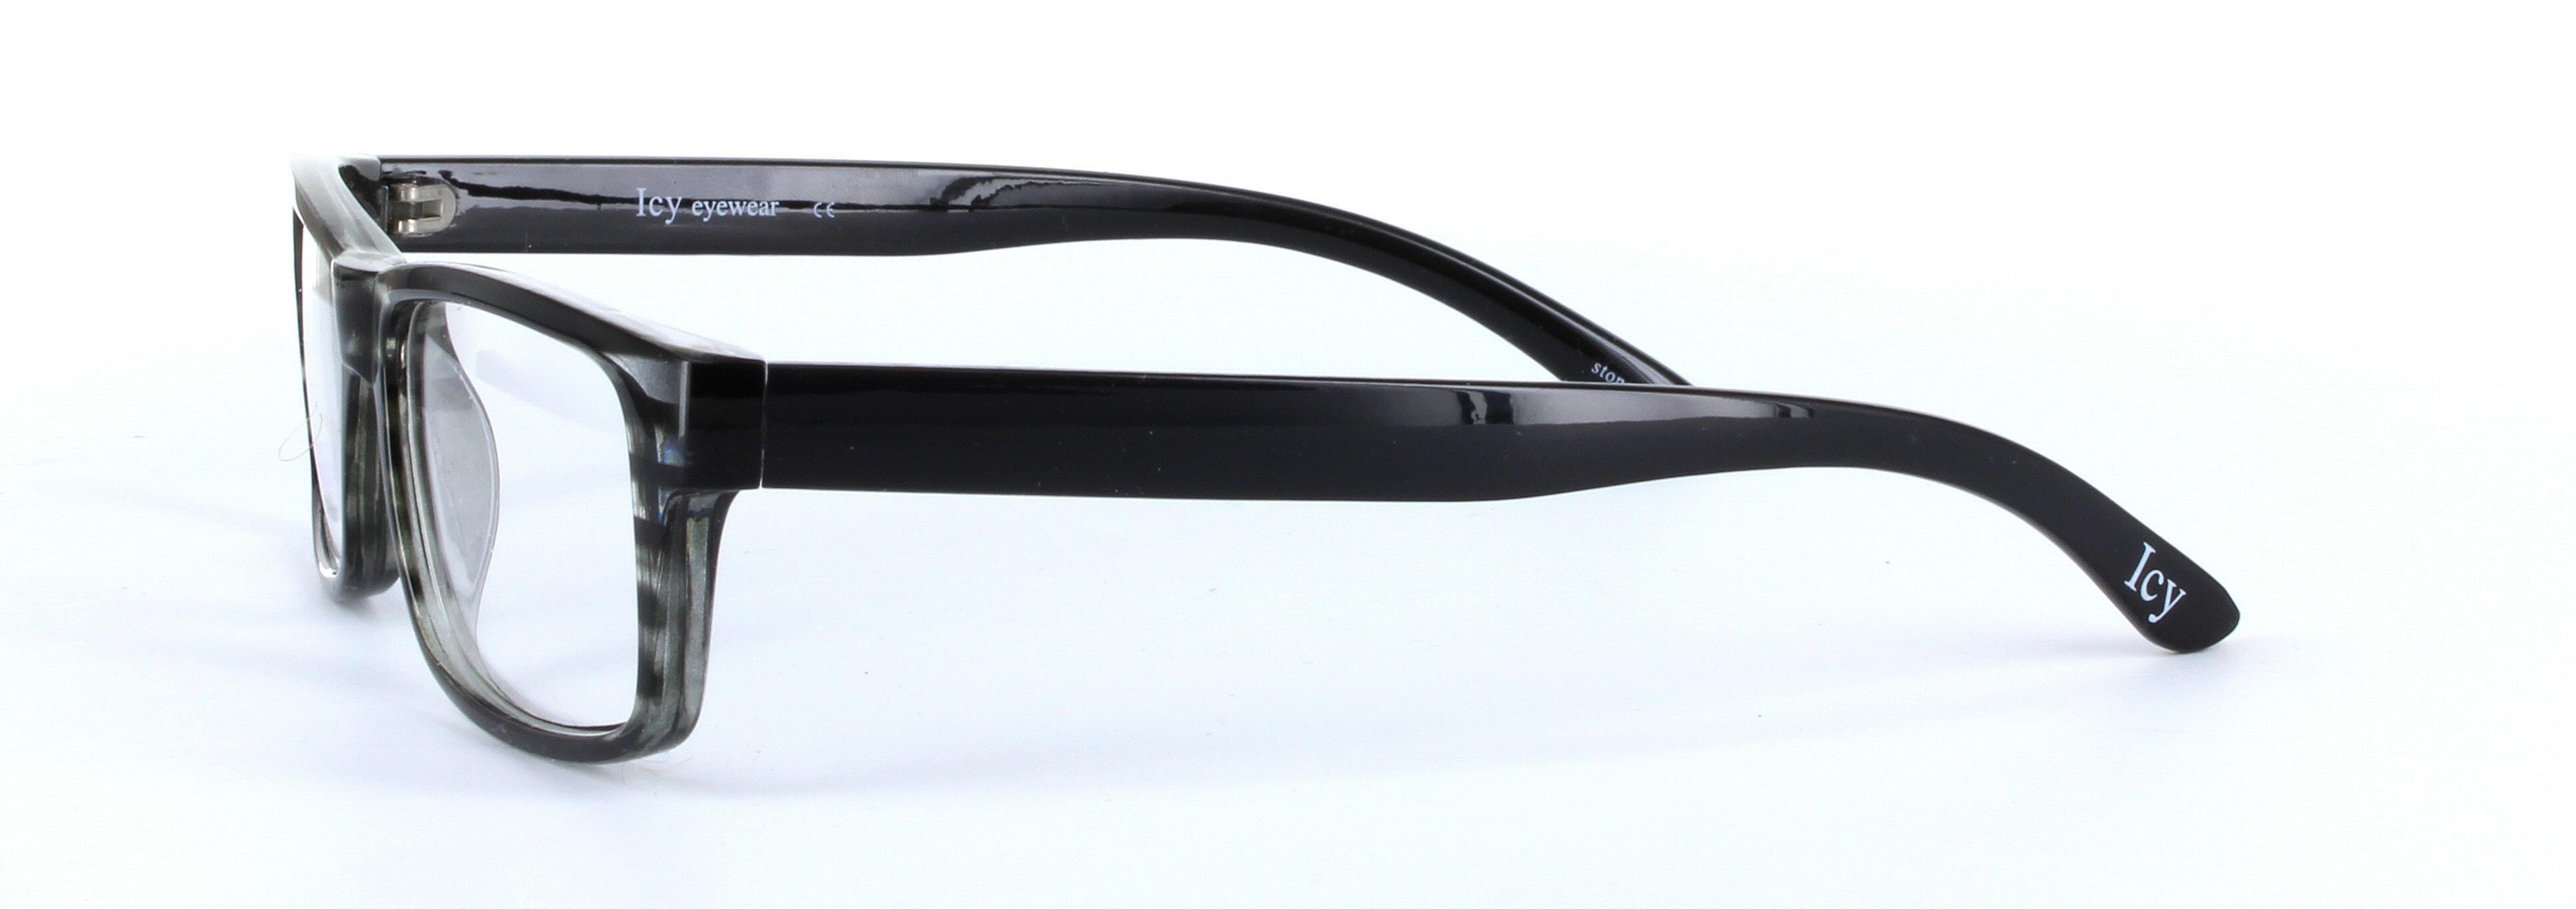 ICY 160 Grey Full Rim Rectangular Square Plastic Glasses - Image View 2